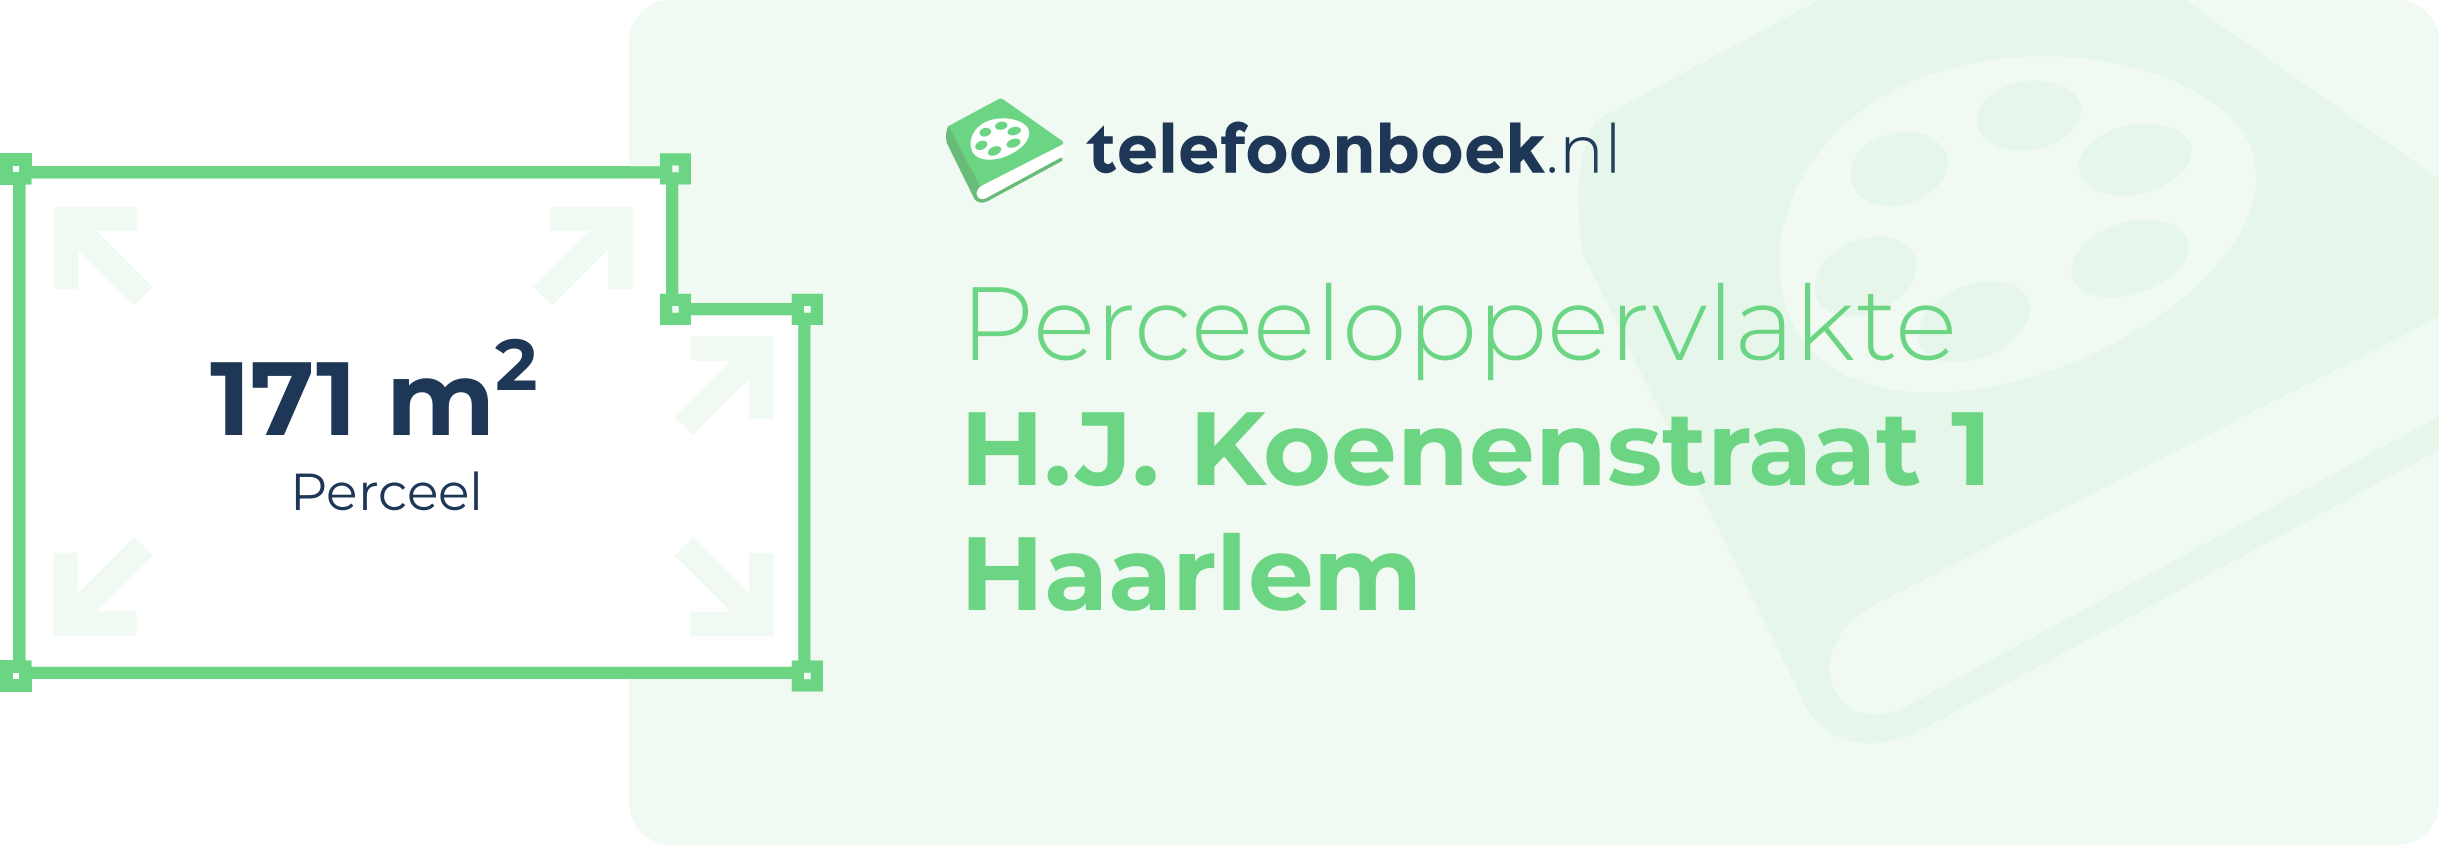 Perceeloppervlakte H.J. Koenenstraat 1 Haarlem